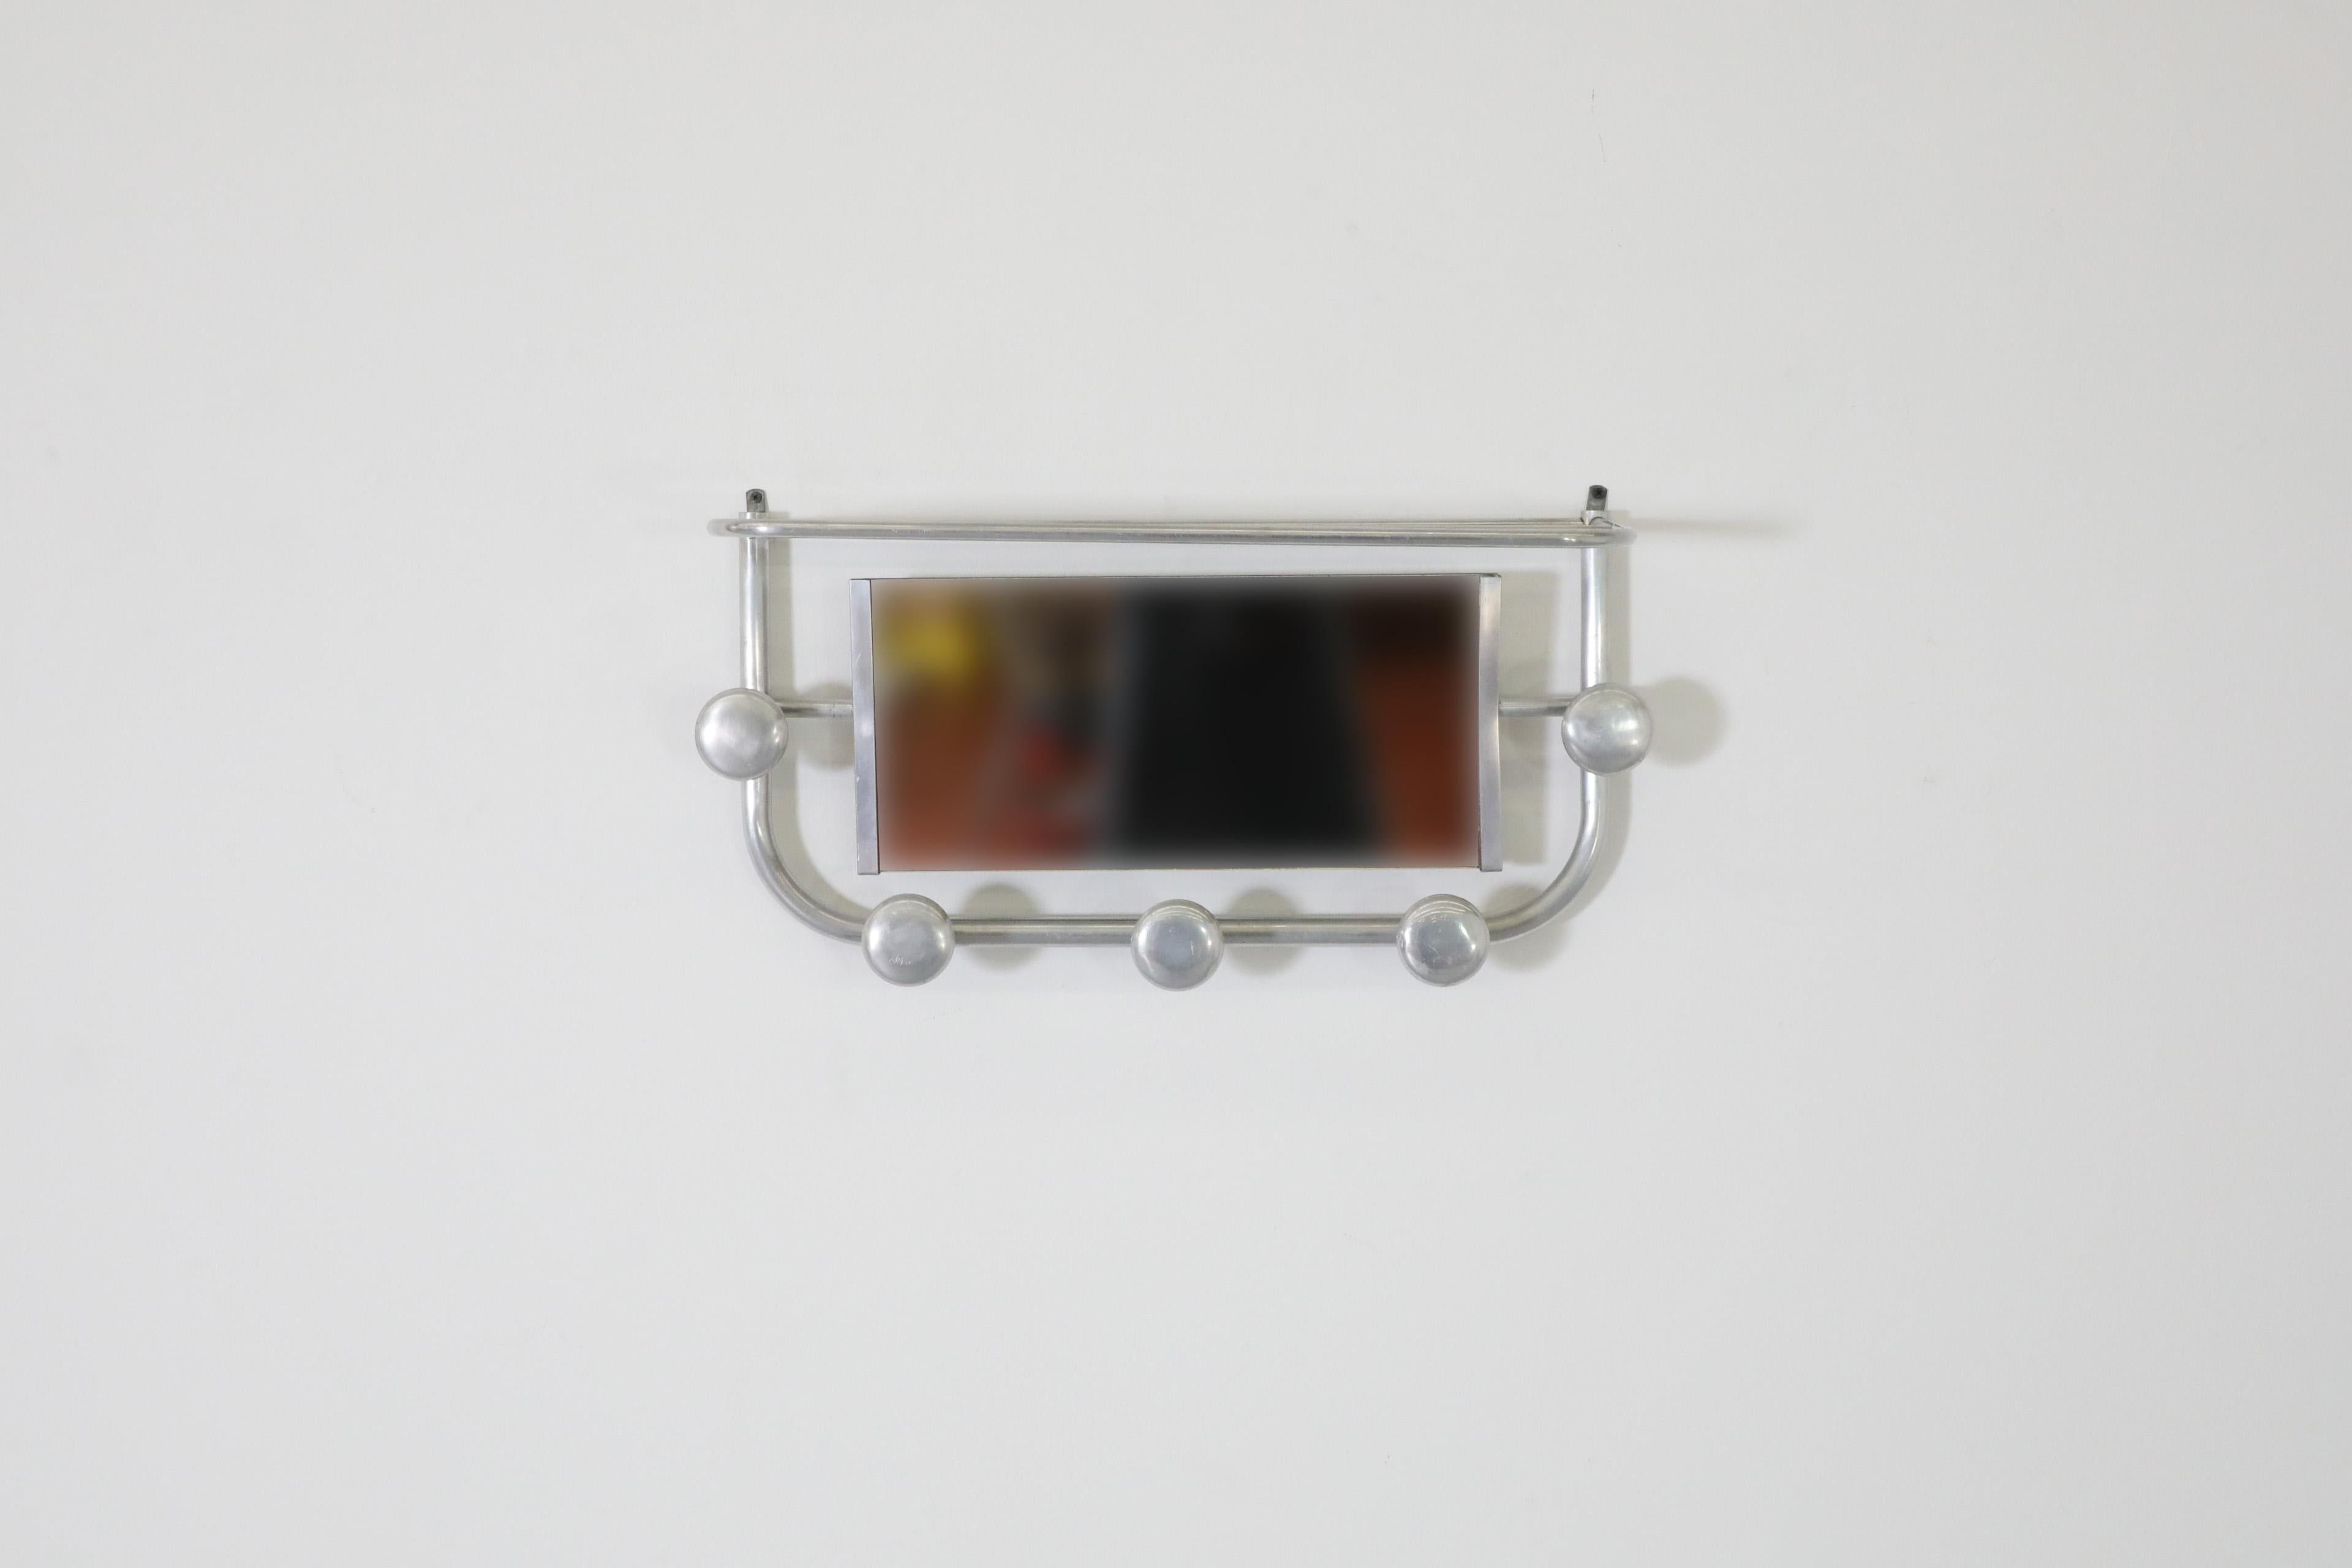 Französischer Aluminium-Garderobenständer aus der Mitte des Jahrhunderts, inspiriert vom Art déco, zugeschrieben dem Designer Roger Feraud. Perfekt für den Eingangsbereich oder den Kleiderschrank. Dieser formschöne Wandgarderobenständer verfügt über